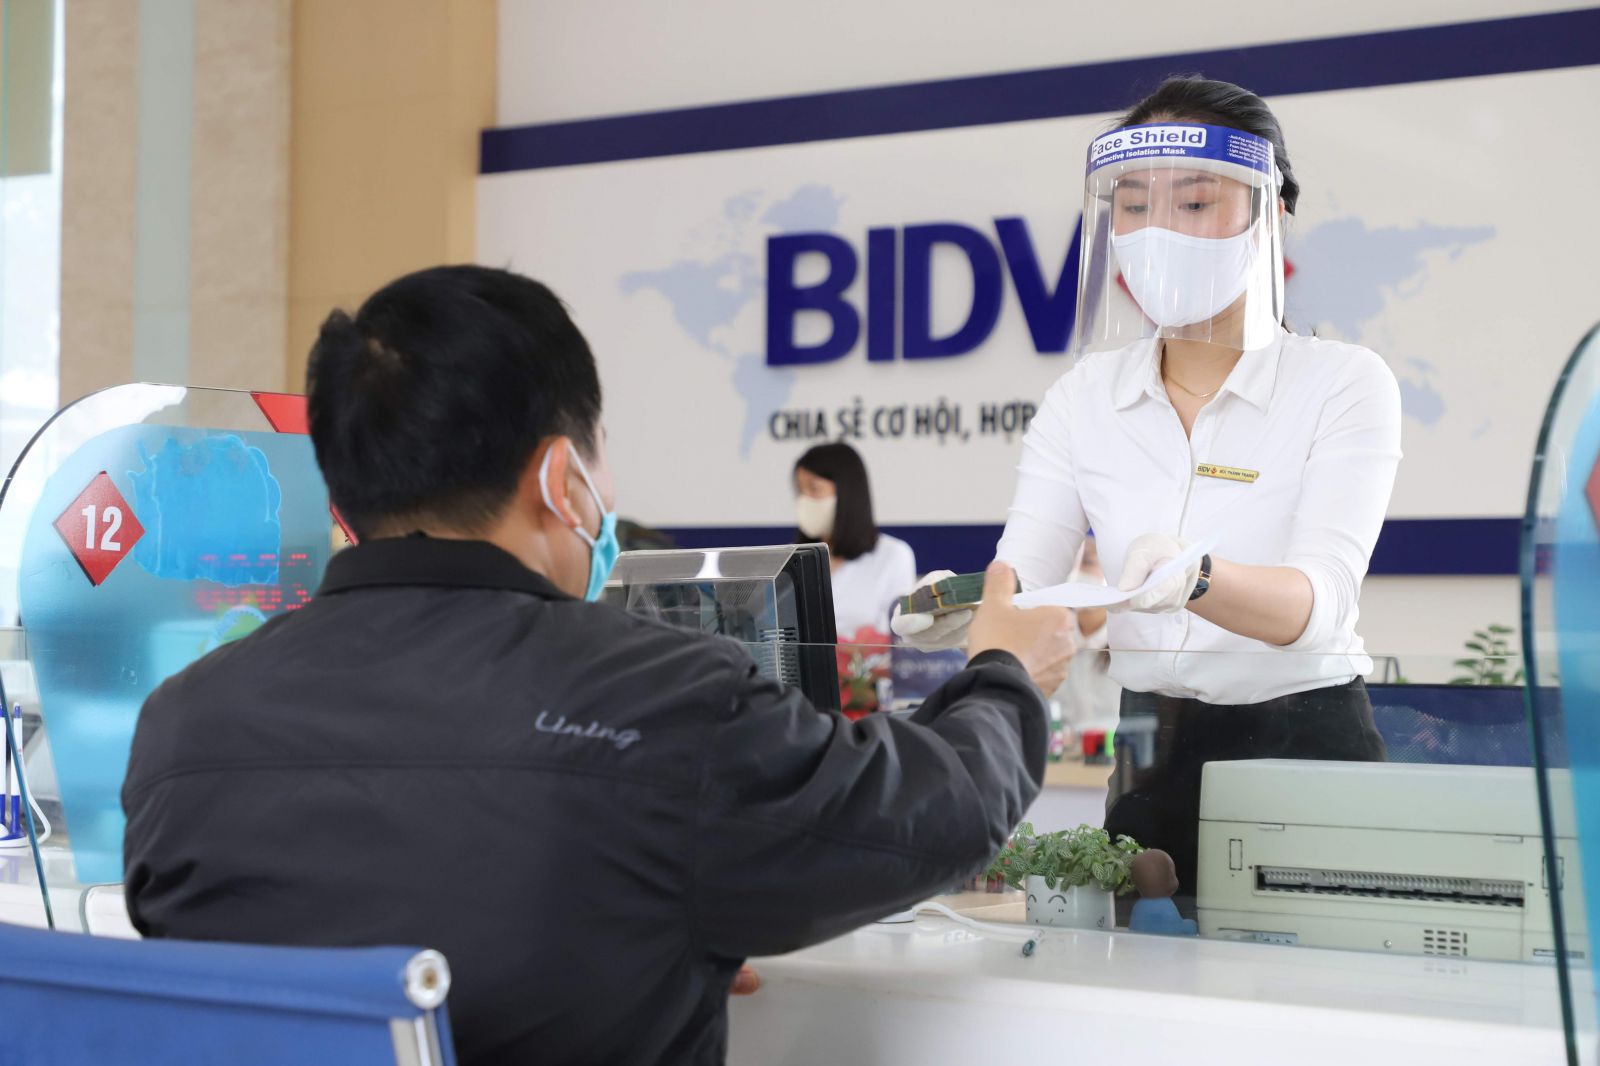 BIDV đang triển khai gói hỗ trợ cho doanh nghiệp tổng ngân sách lên 1000 tỷ đồng